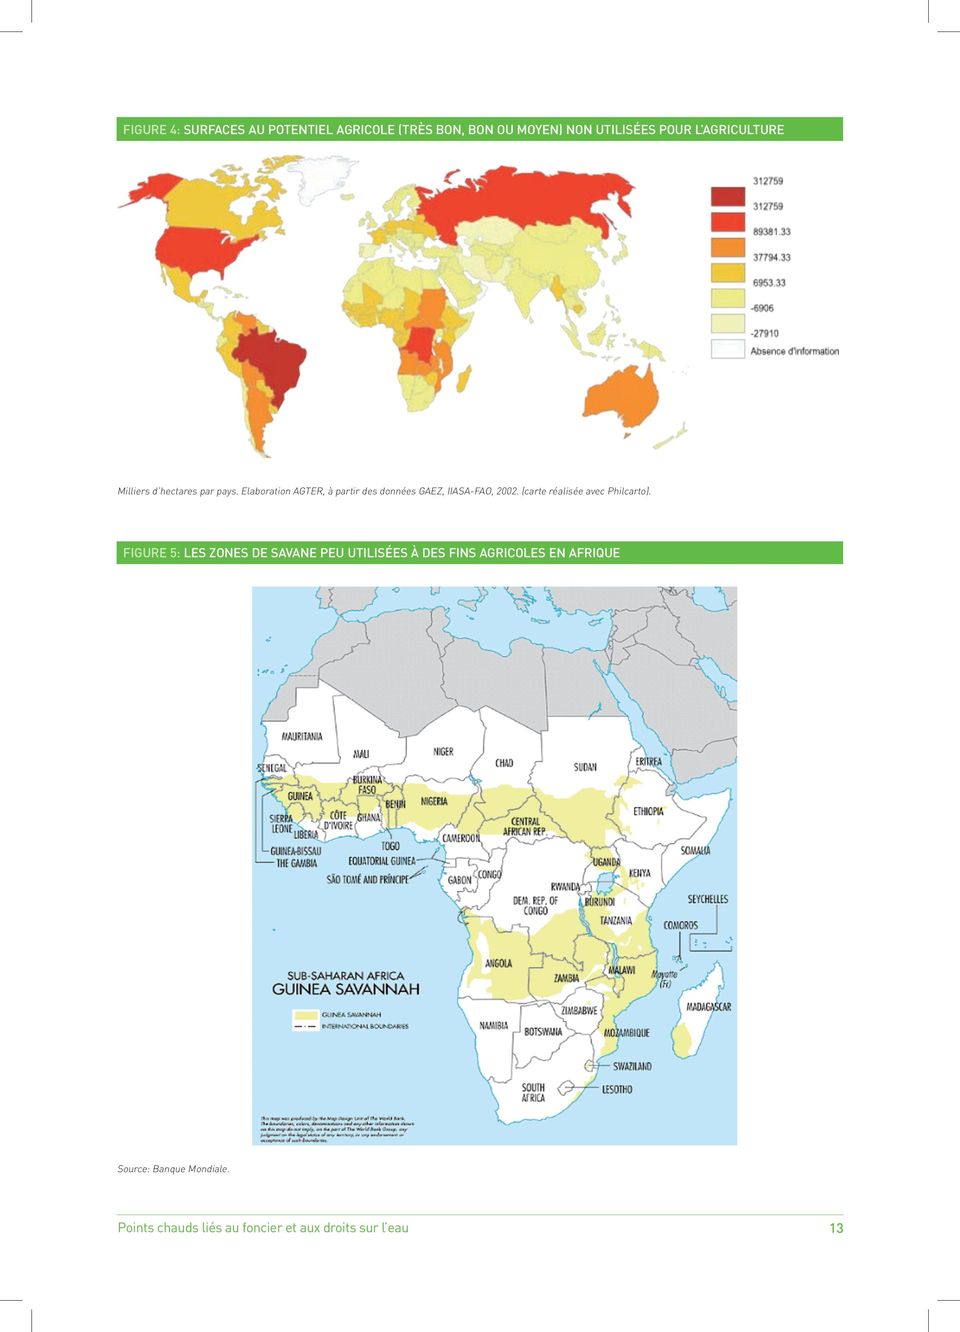 Elaboration AGTER, à partir des données GAEZ, IIASA-FAO, 2002. (carte réalisée avec Philcarto). Milliers d'hectares par pays.